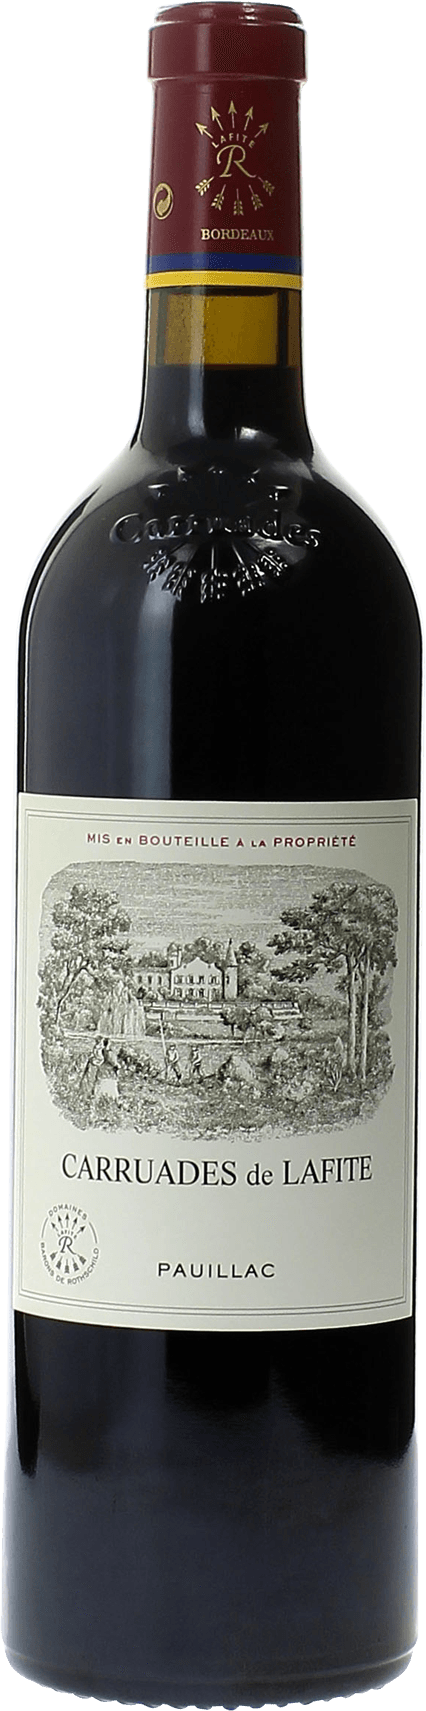 Carruades de lafite 1987 2me vin de LAFITE ROTHSCHILD Pauillac, Bordeaux rouge